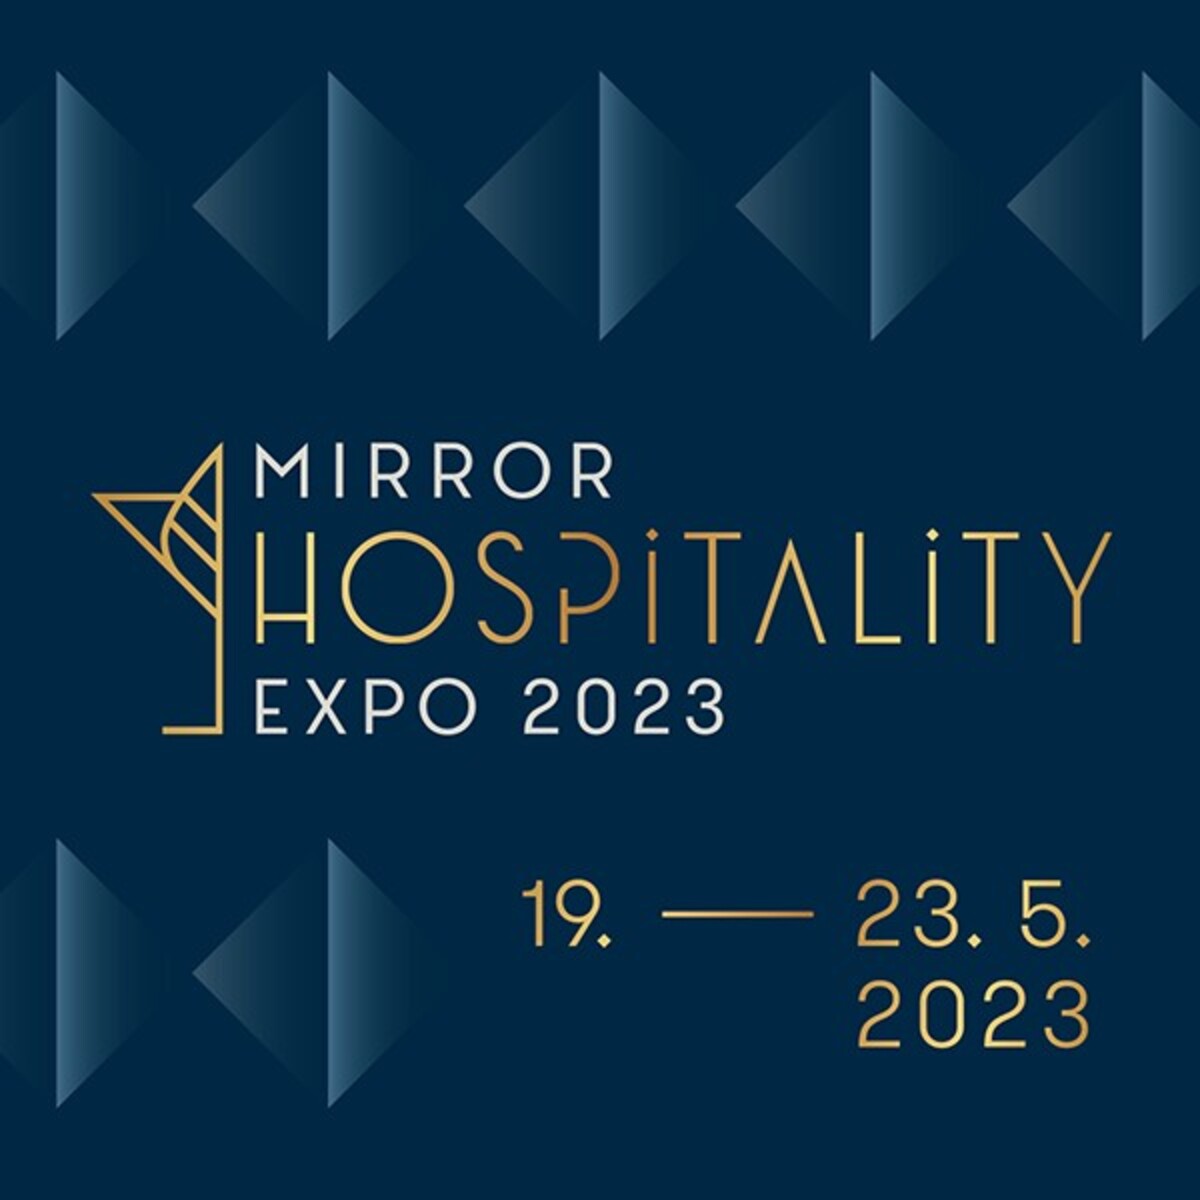 Mirror Hospitality Expo 2023